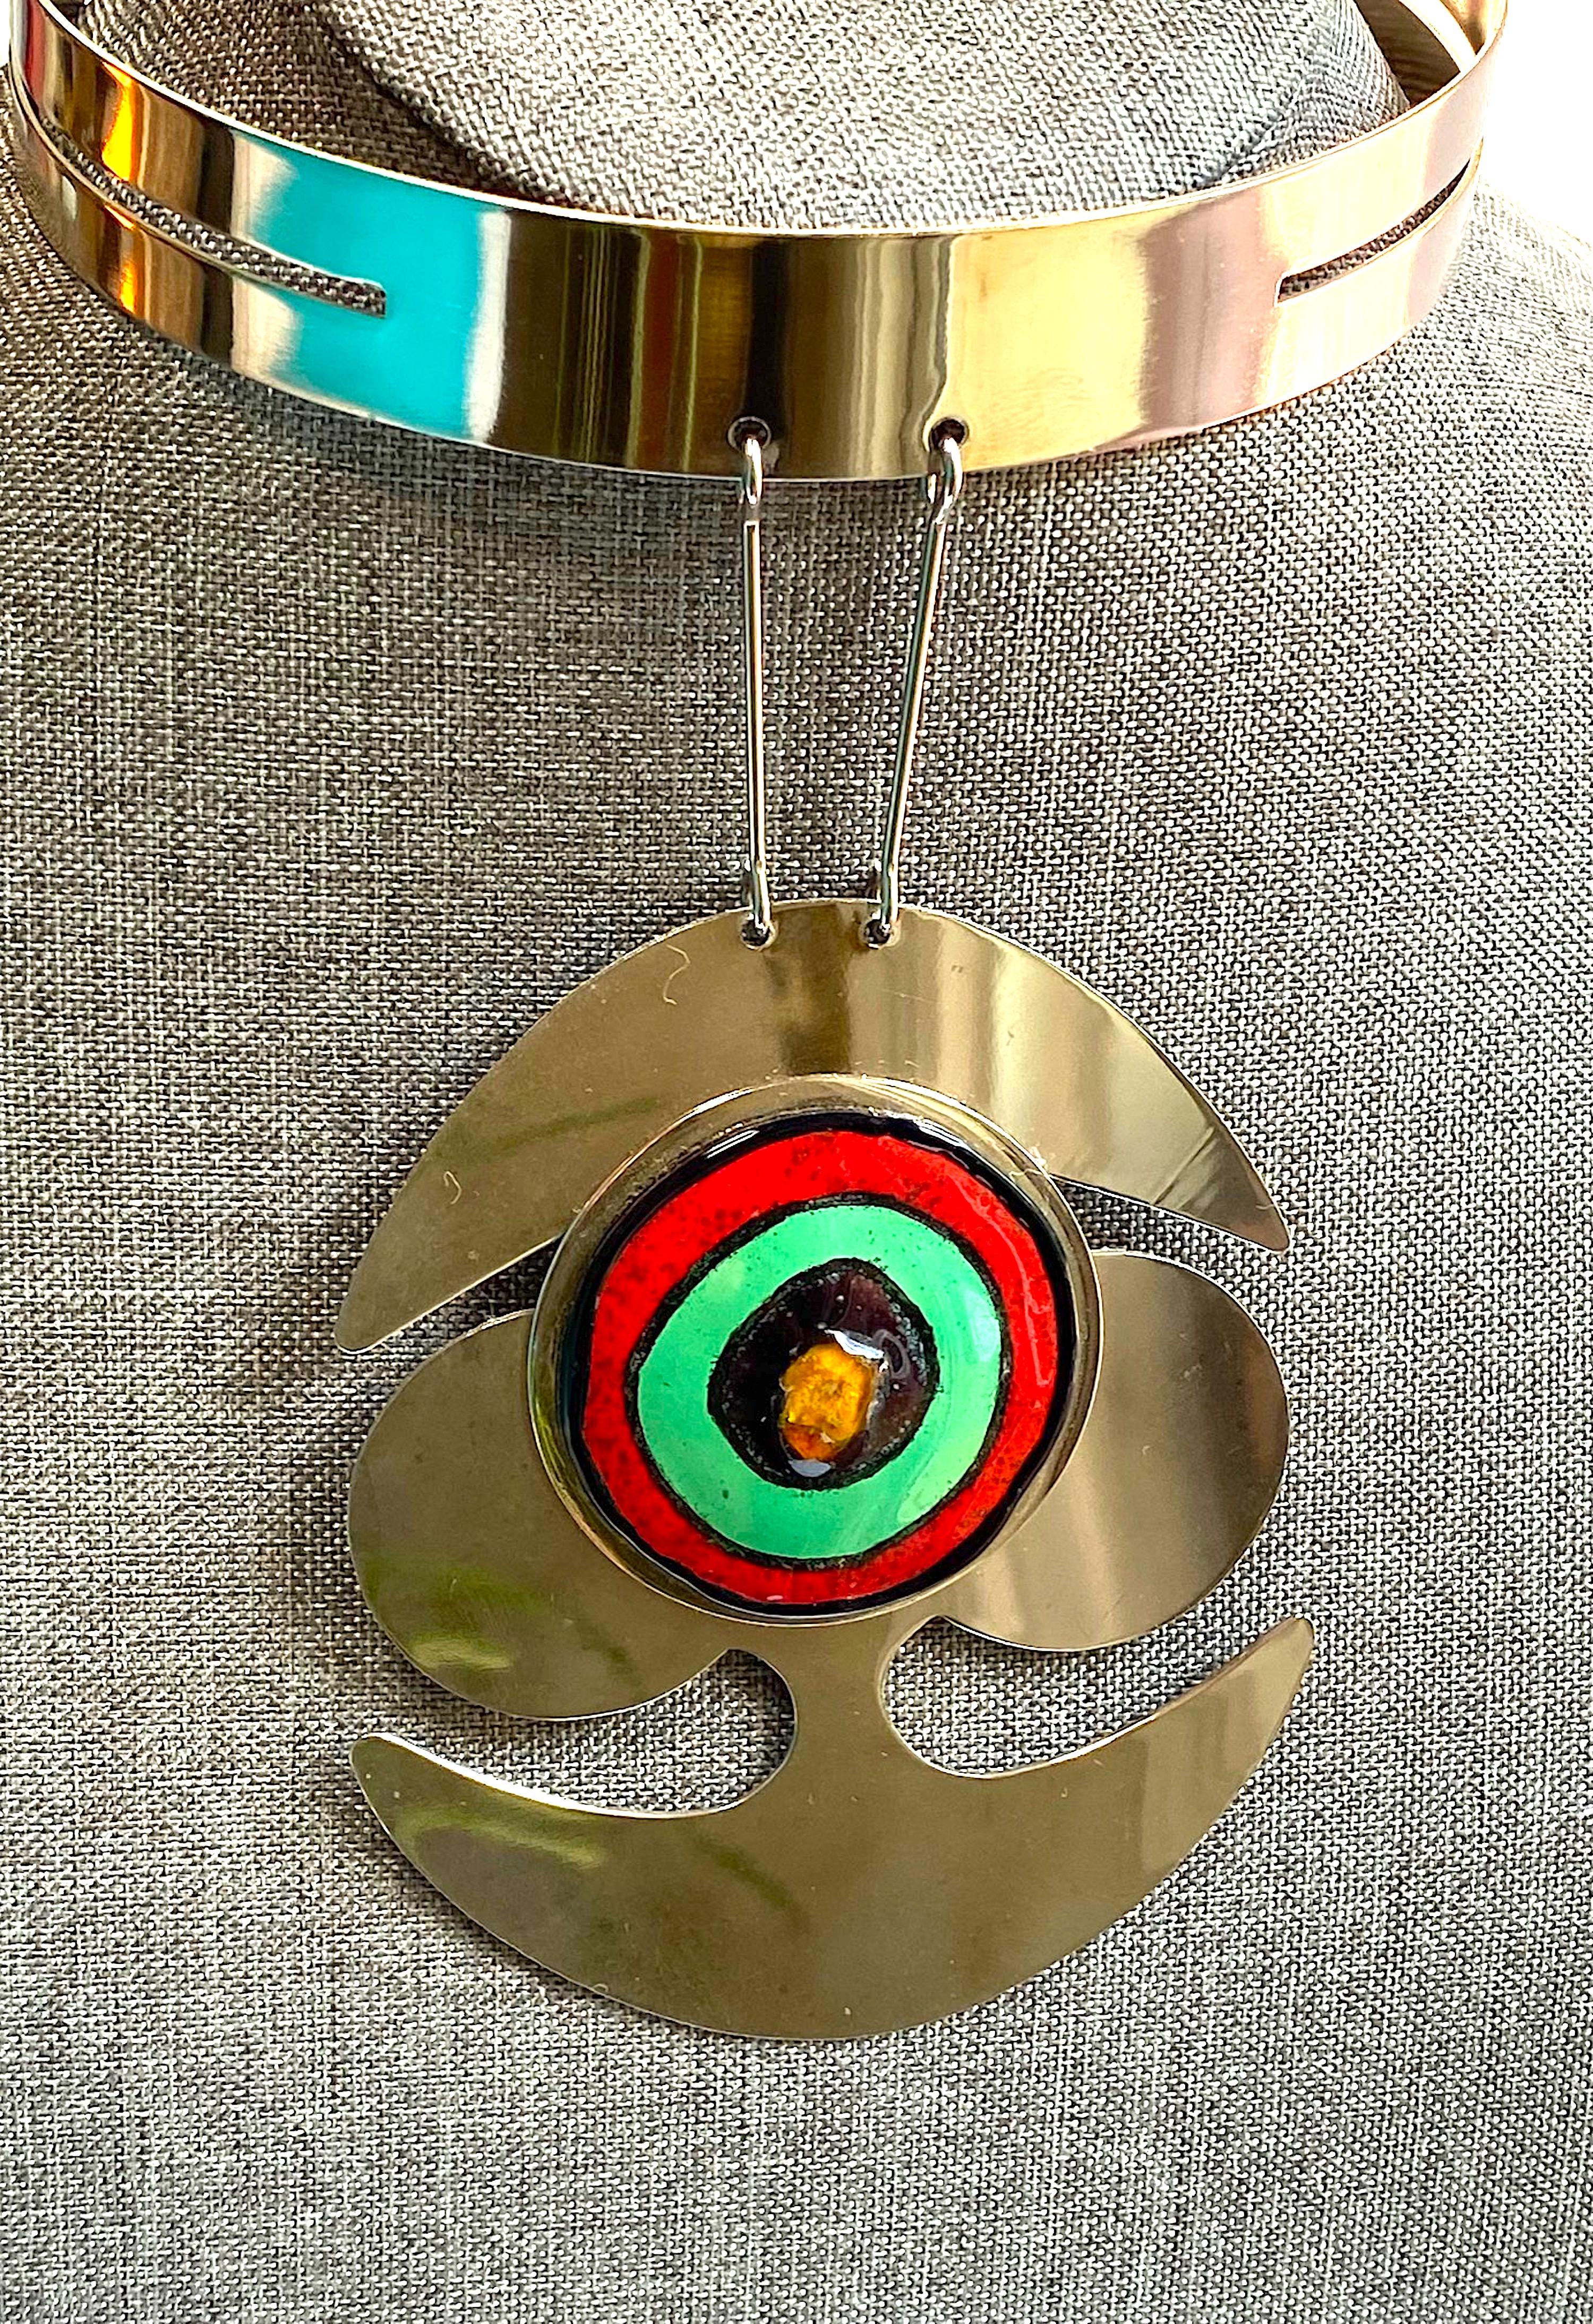 Pierre Cardin 1960s Space Age Mod Enamel & Chrome Necklace 9